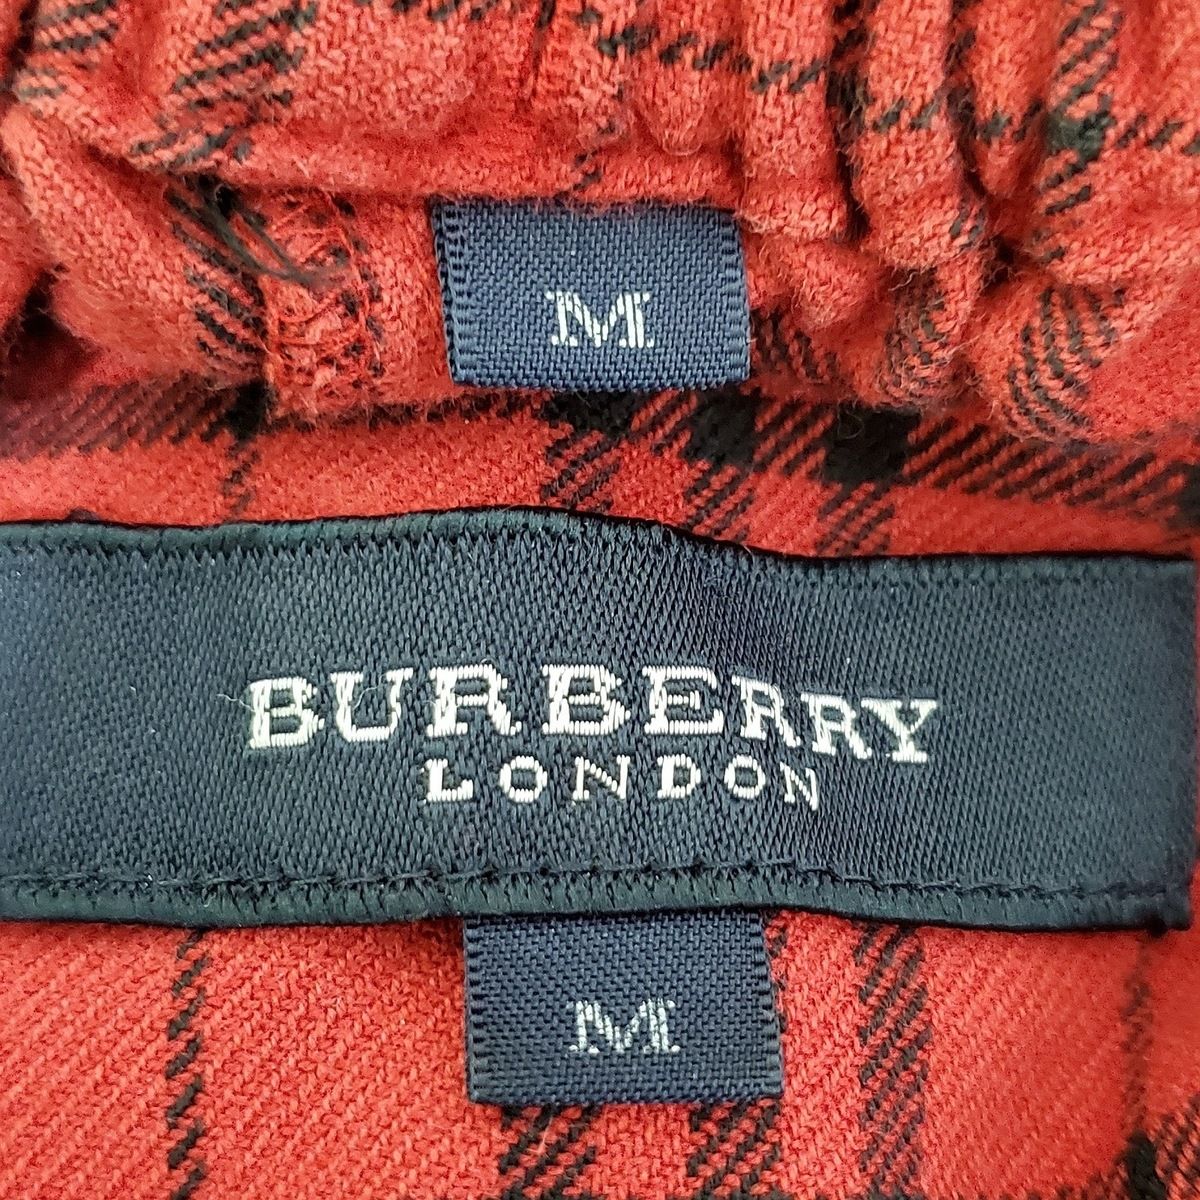 Burberry LONDON(バーバリーロンドン) メンズセットアップ メンズ - レッド×黒 チェック柄/ウエストゴム/パジャマ 綿